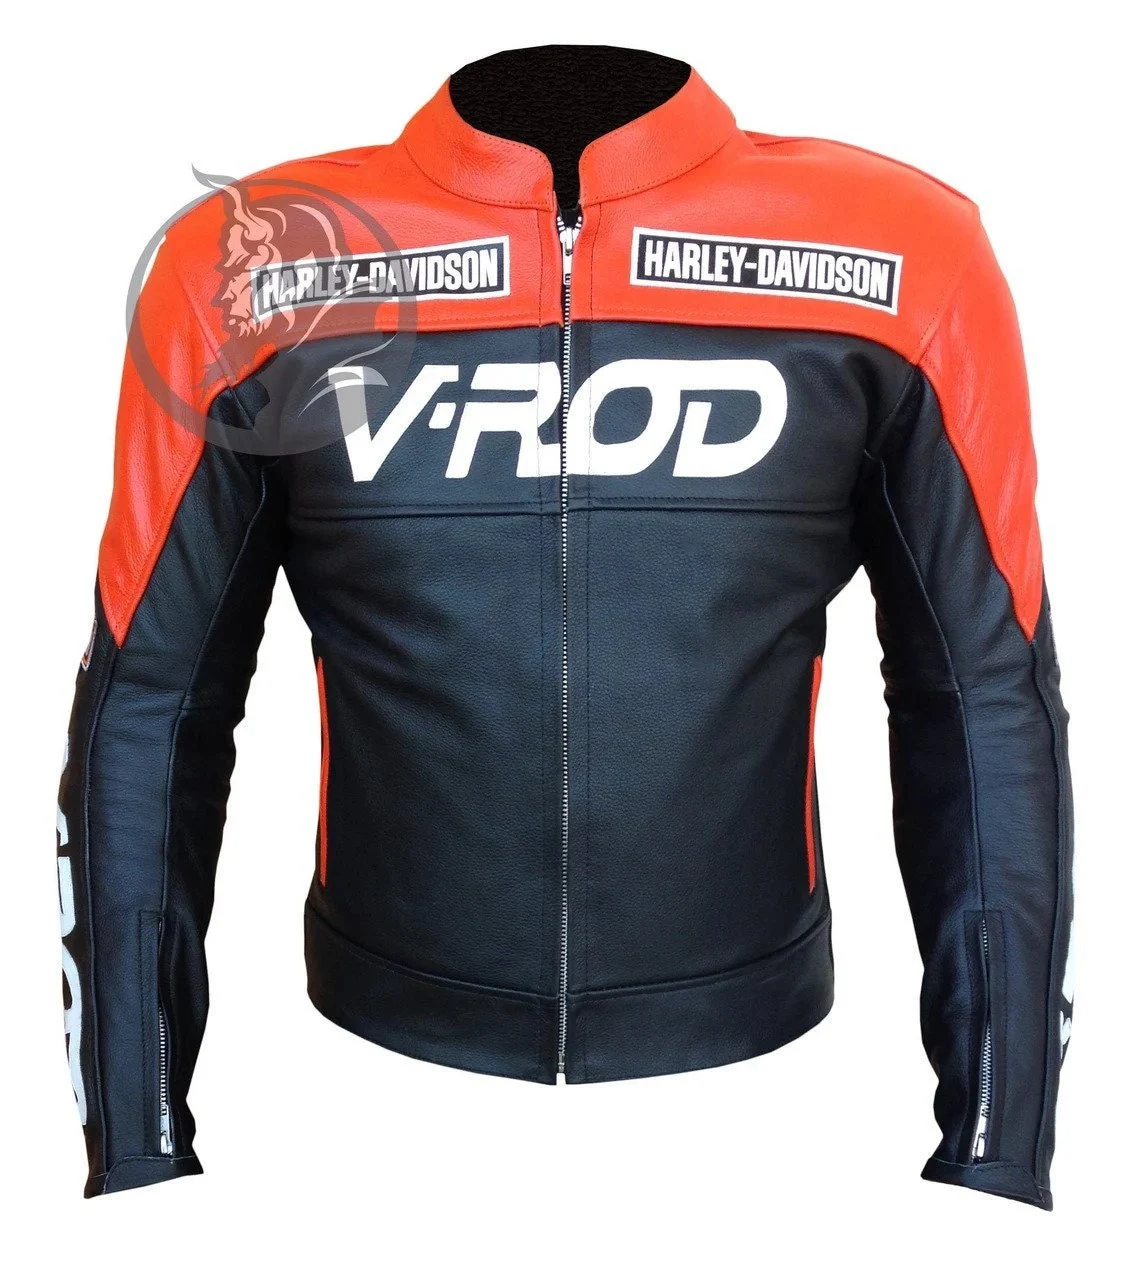 Harley Davidson VROD Leather Jacket